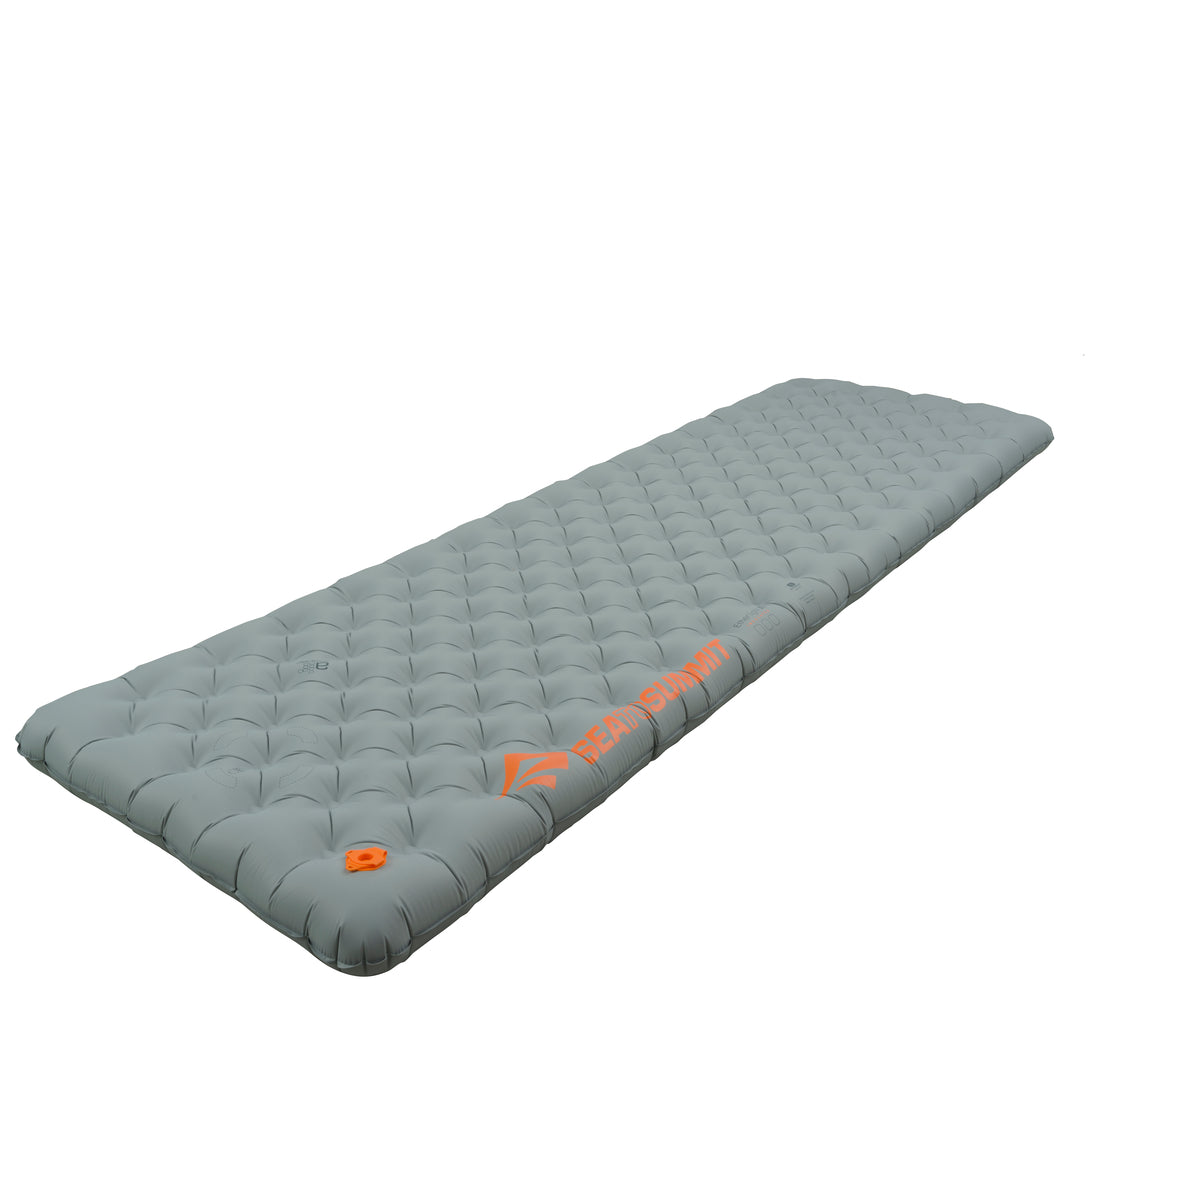 Rec. Large || Ether Light XT Insulated Air Sleeping Mat